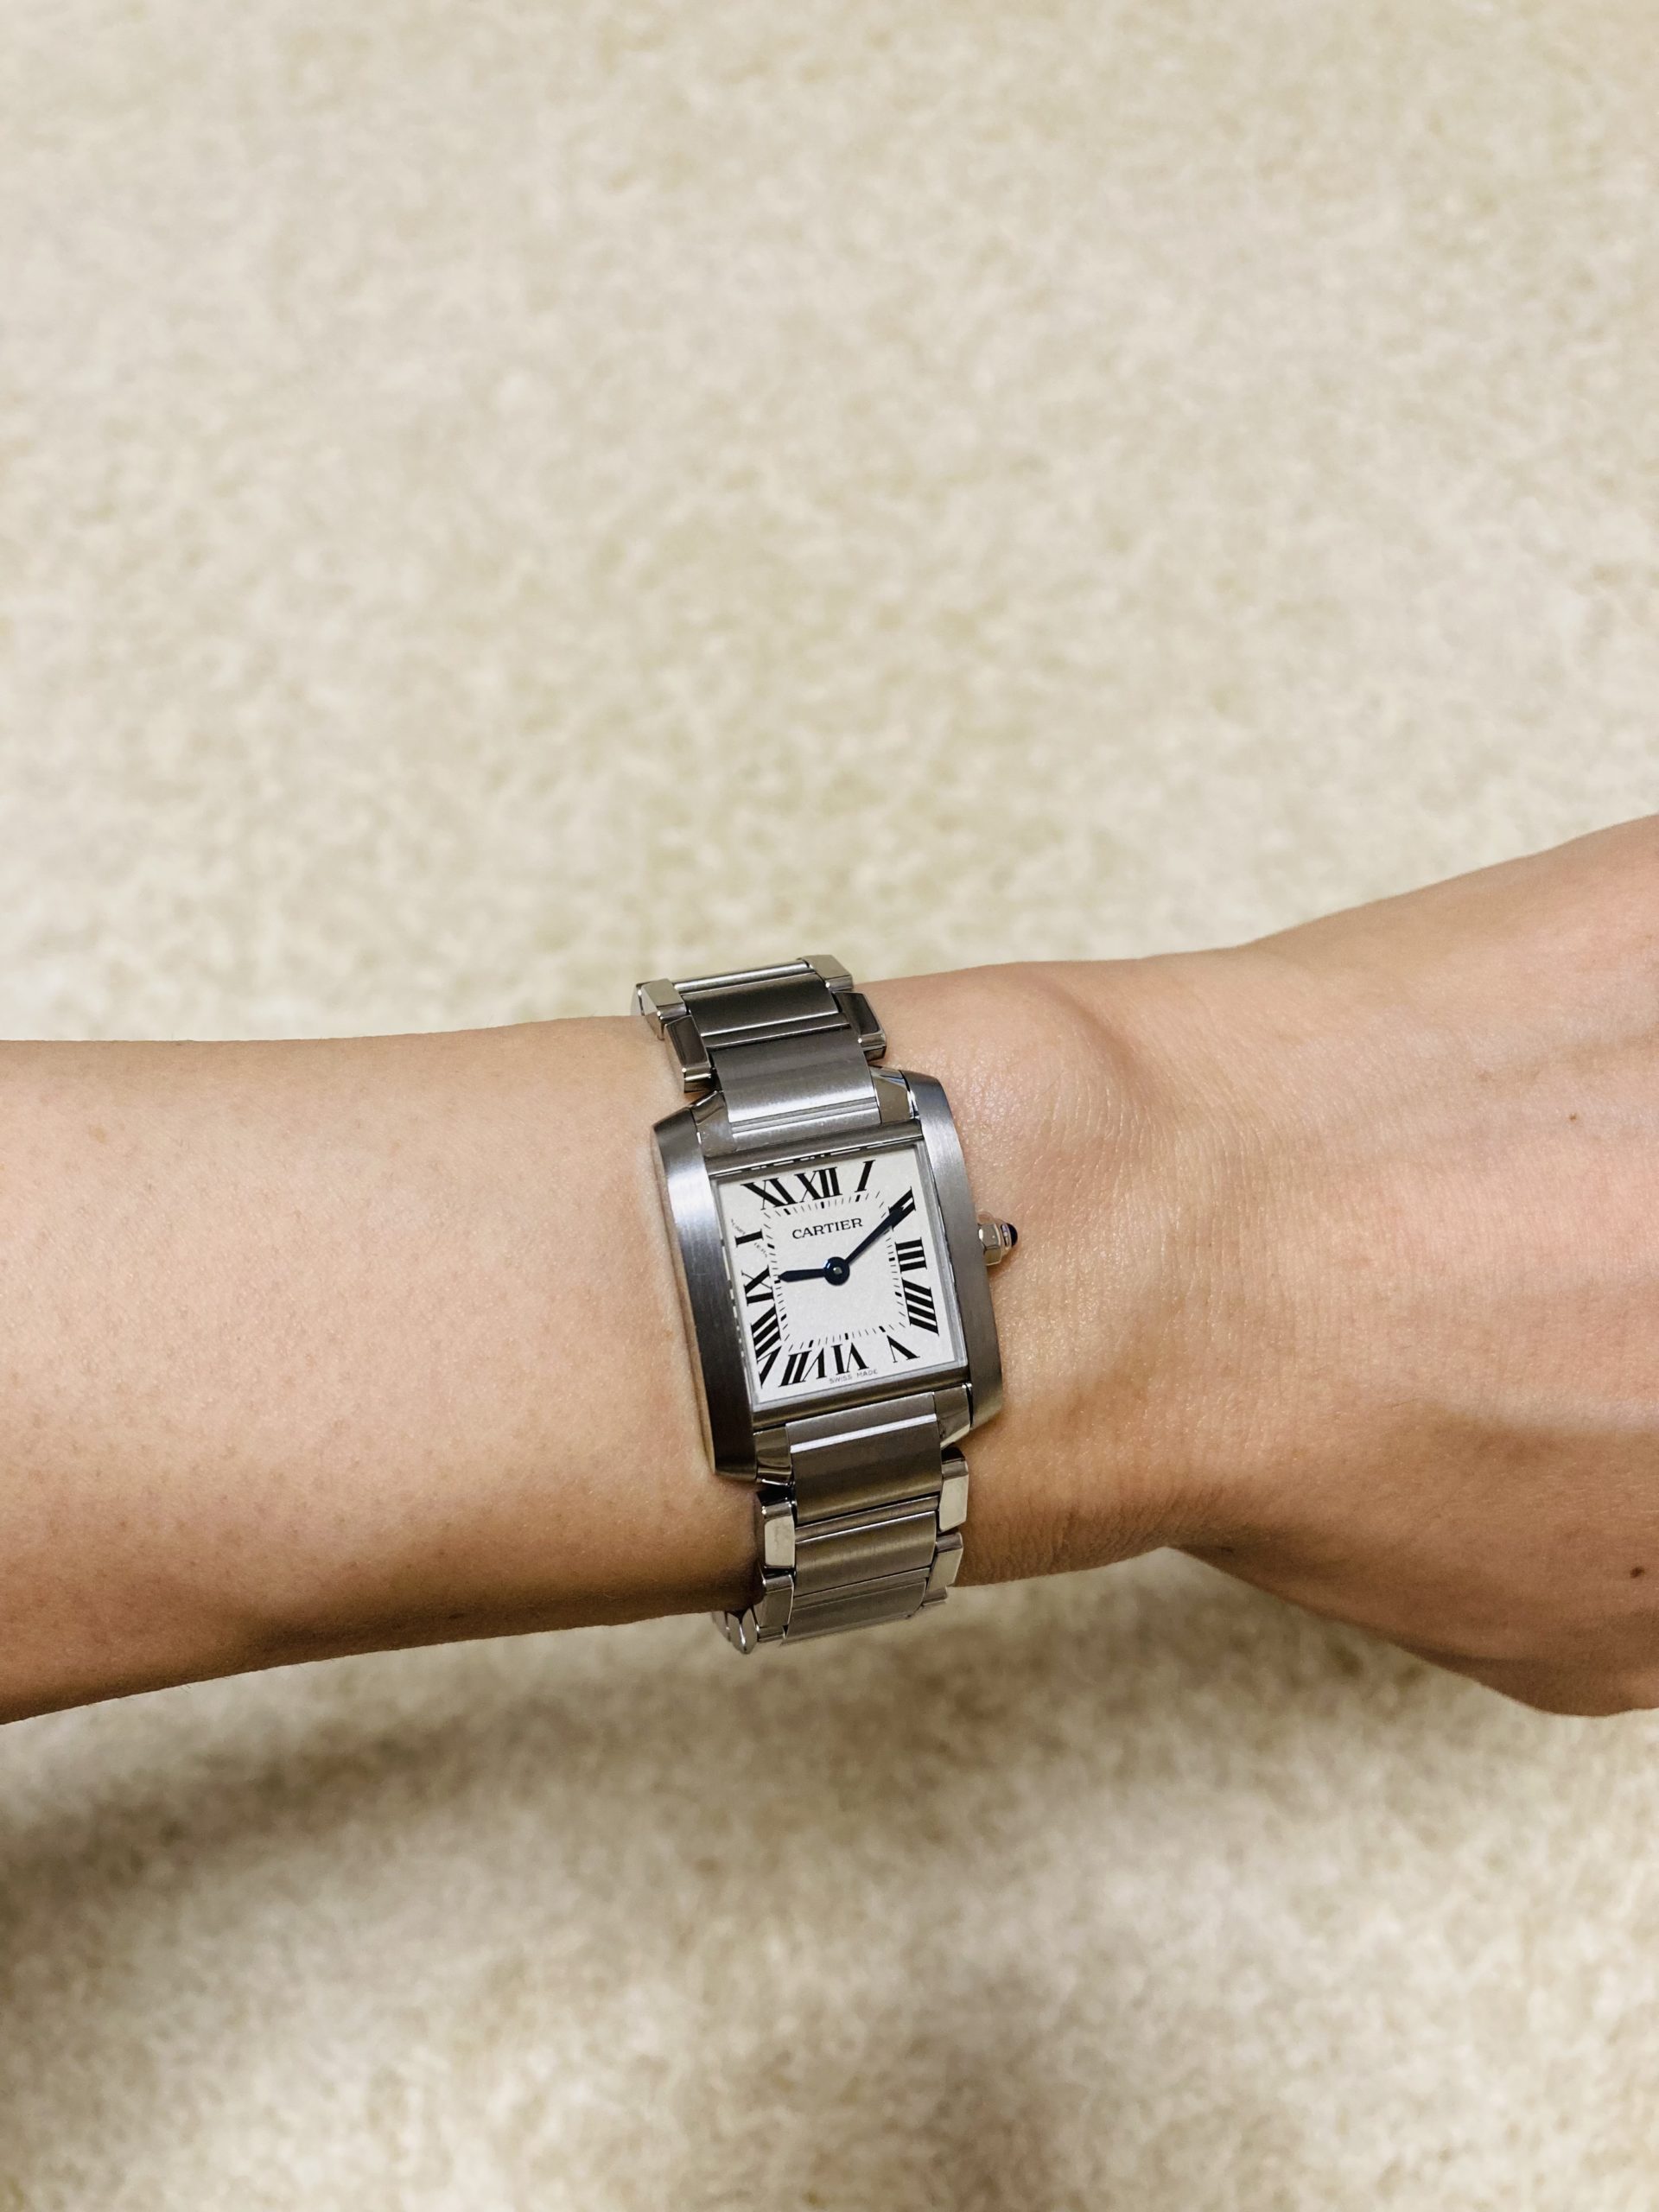 Cartier カルティエ】タンクフランセーズSM 腕時計 - 時計